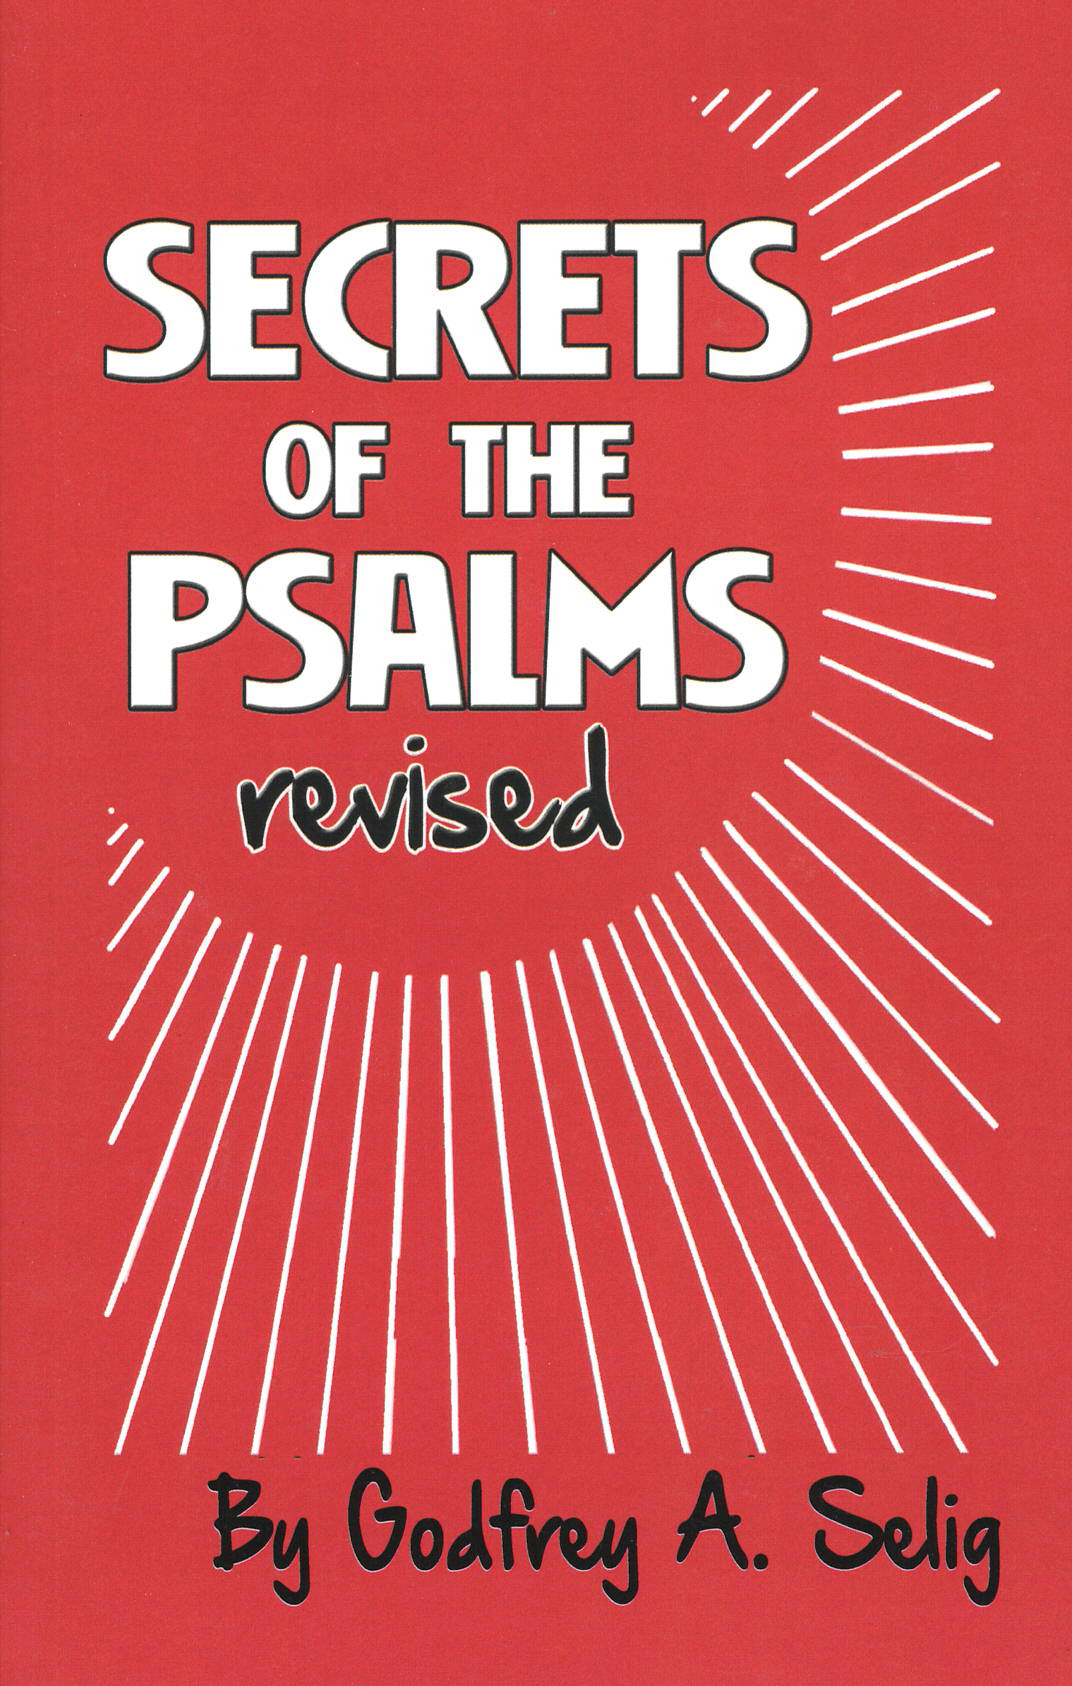 Secrets of the Psalms, by Godfrey A. Selig